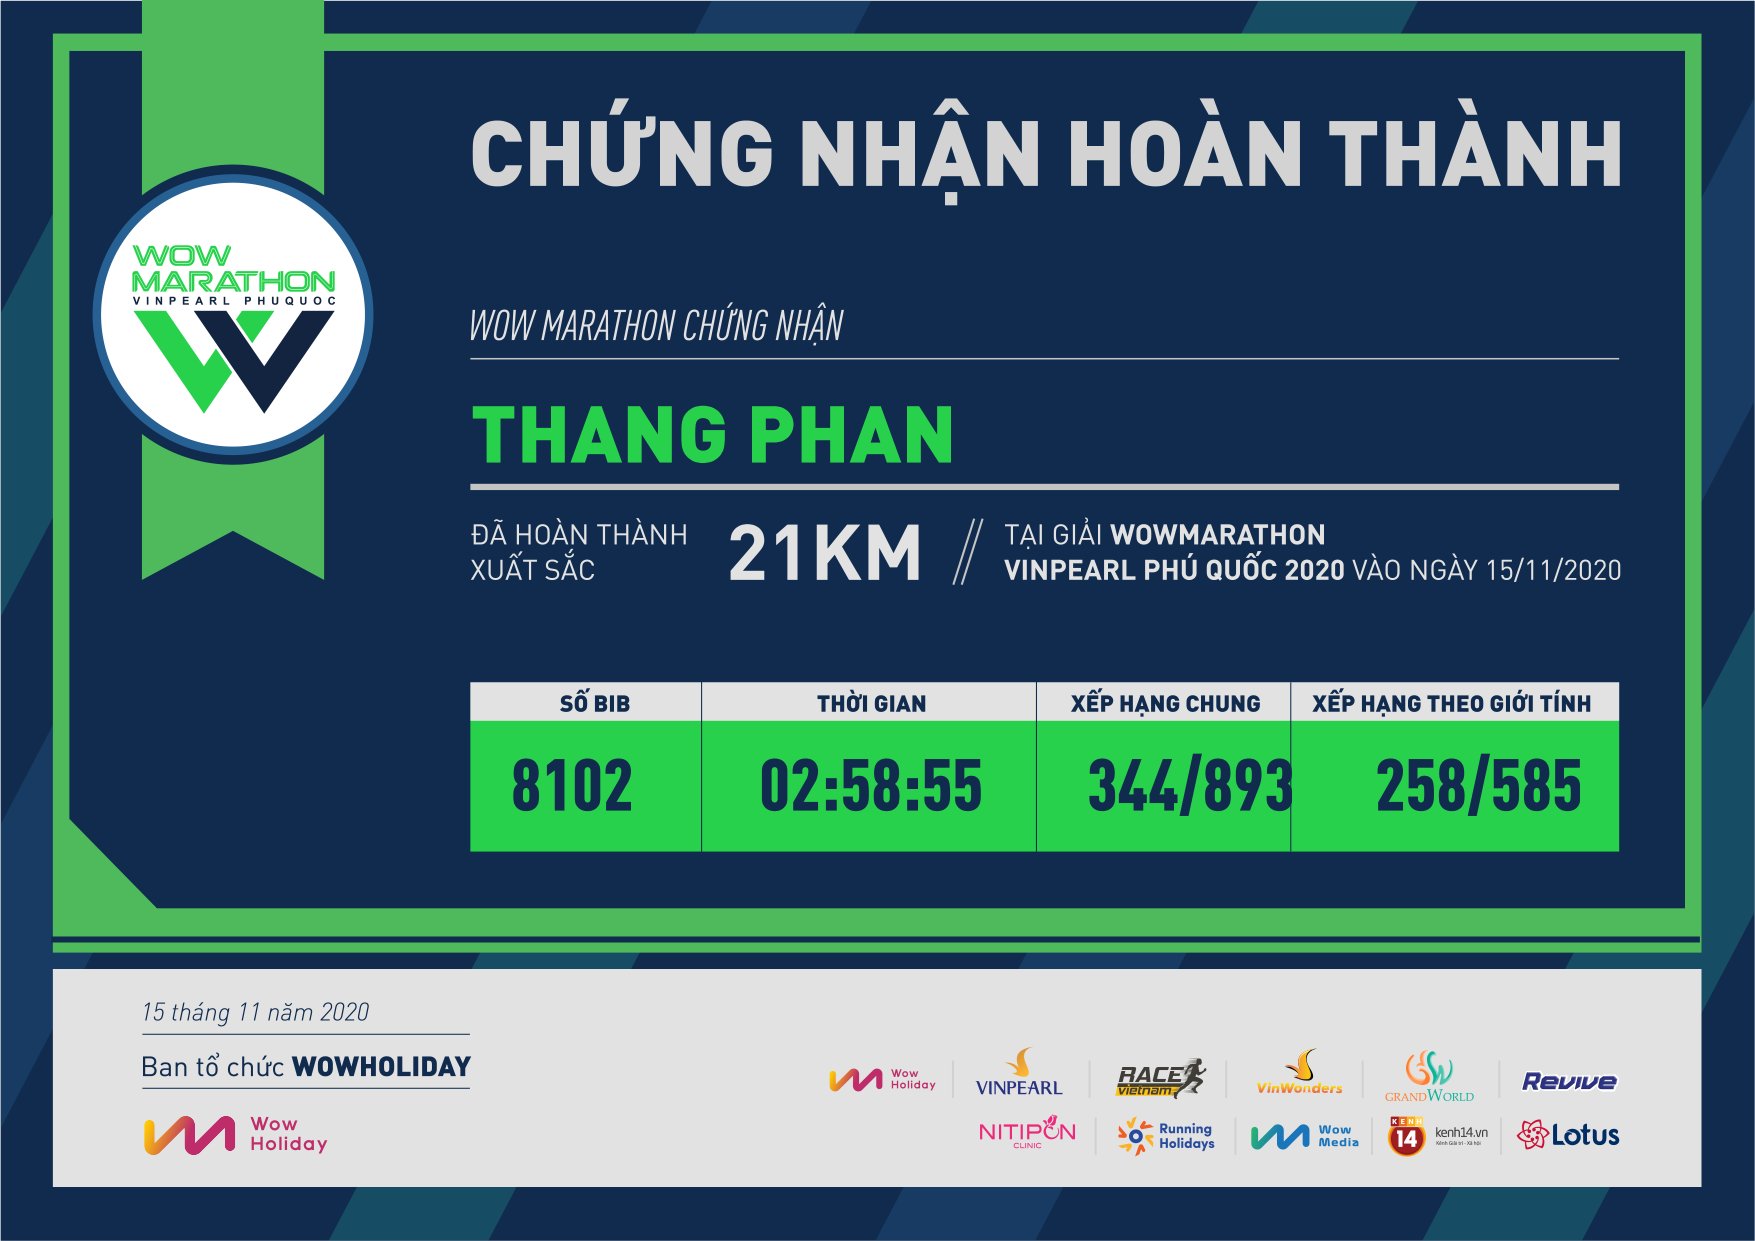 8102 - Thang Phan